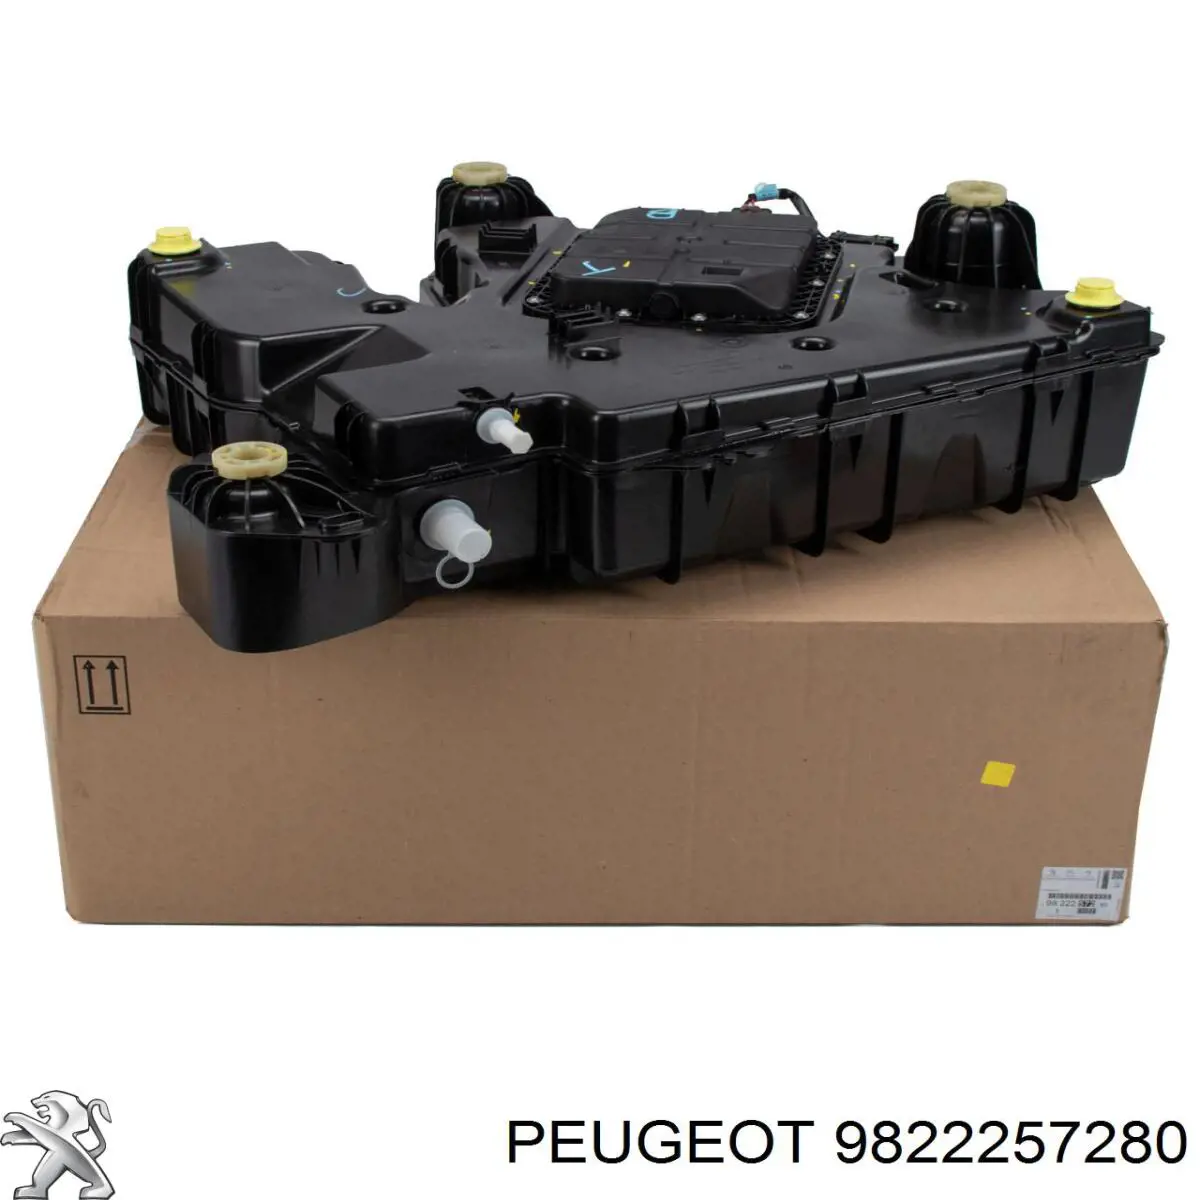 9818748180 Peugeot/Citroen depósito de adblue